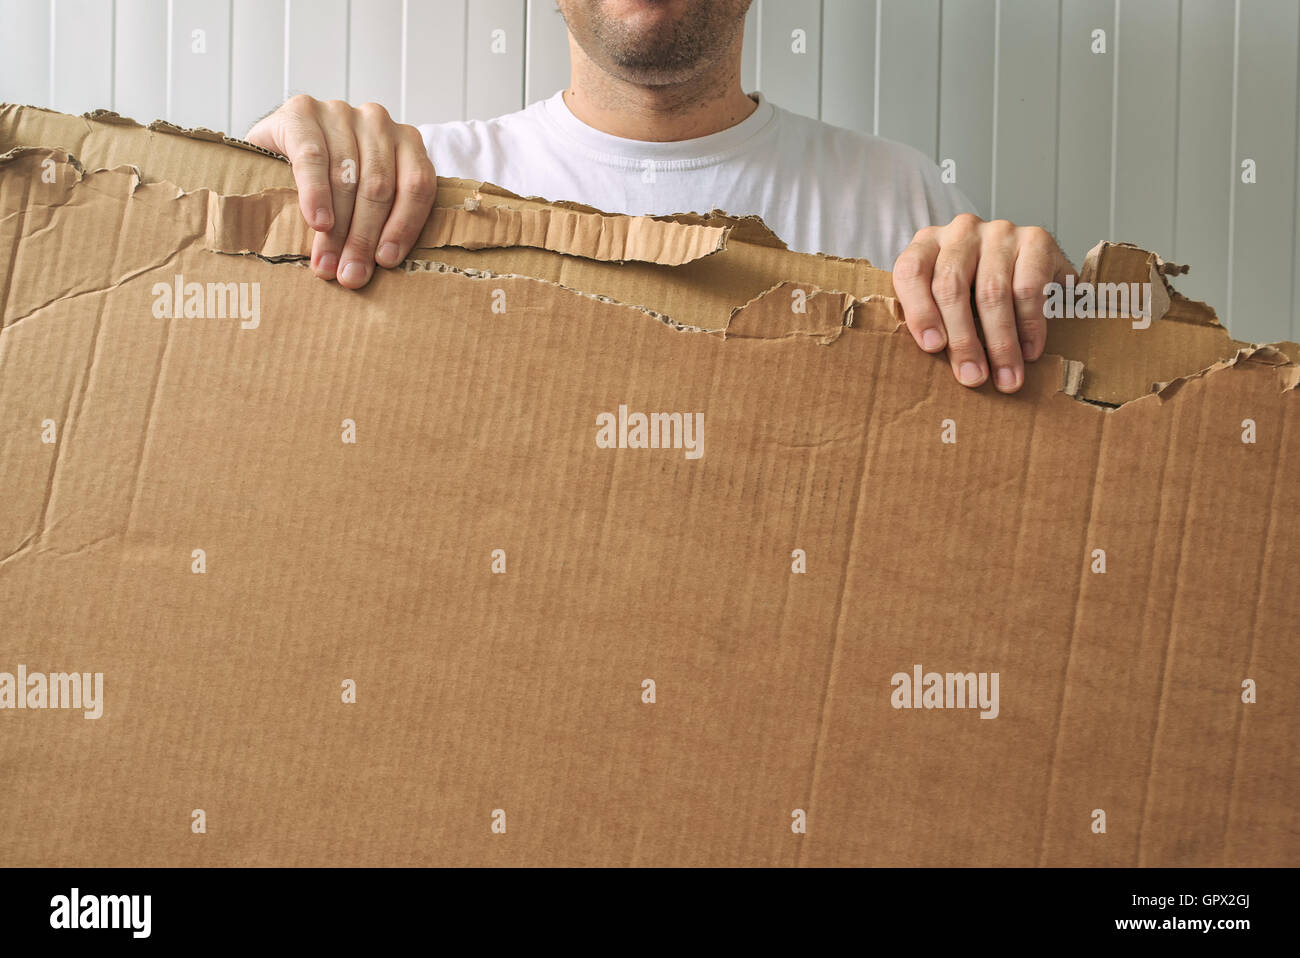 Uomo con cartone vuoto come copia di spazio per il vostro messaggio Foto Stock